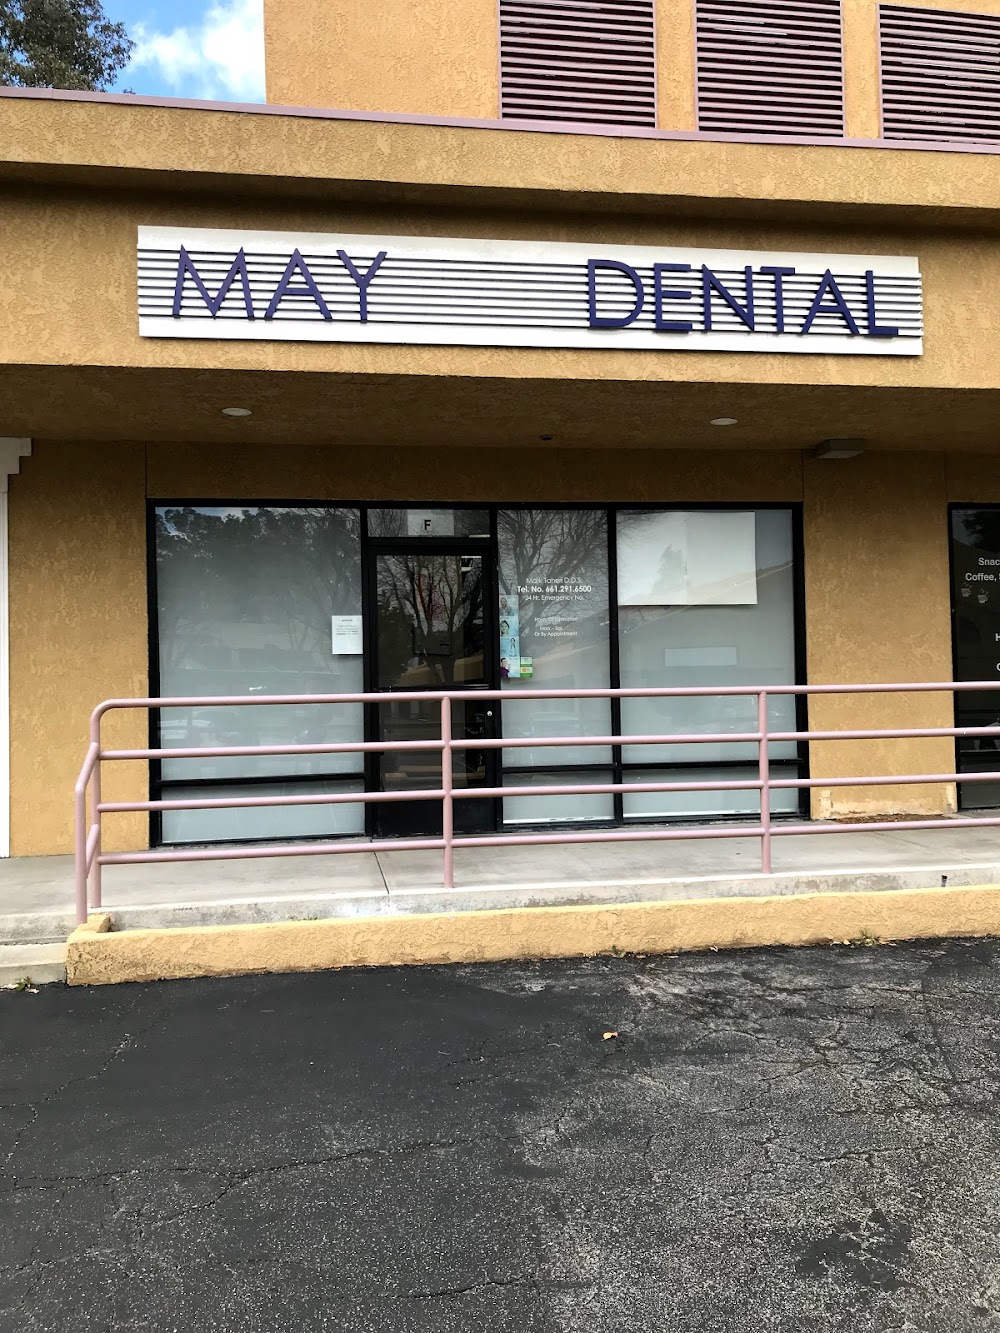 May Dental